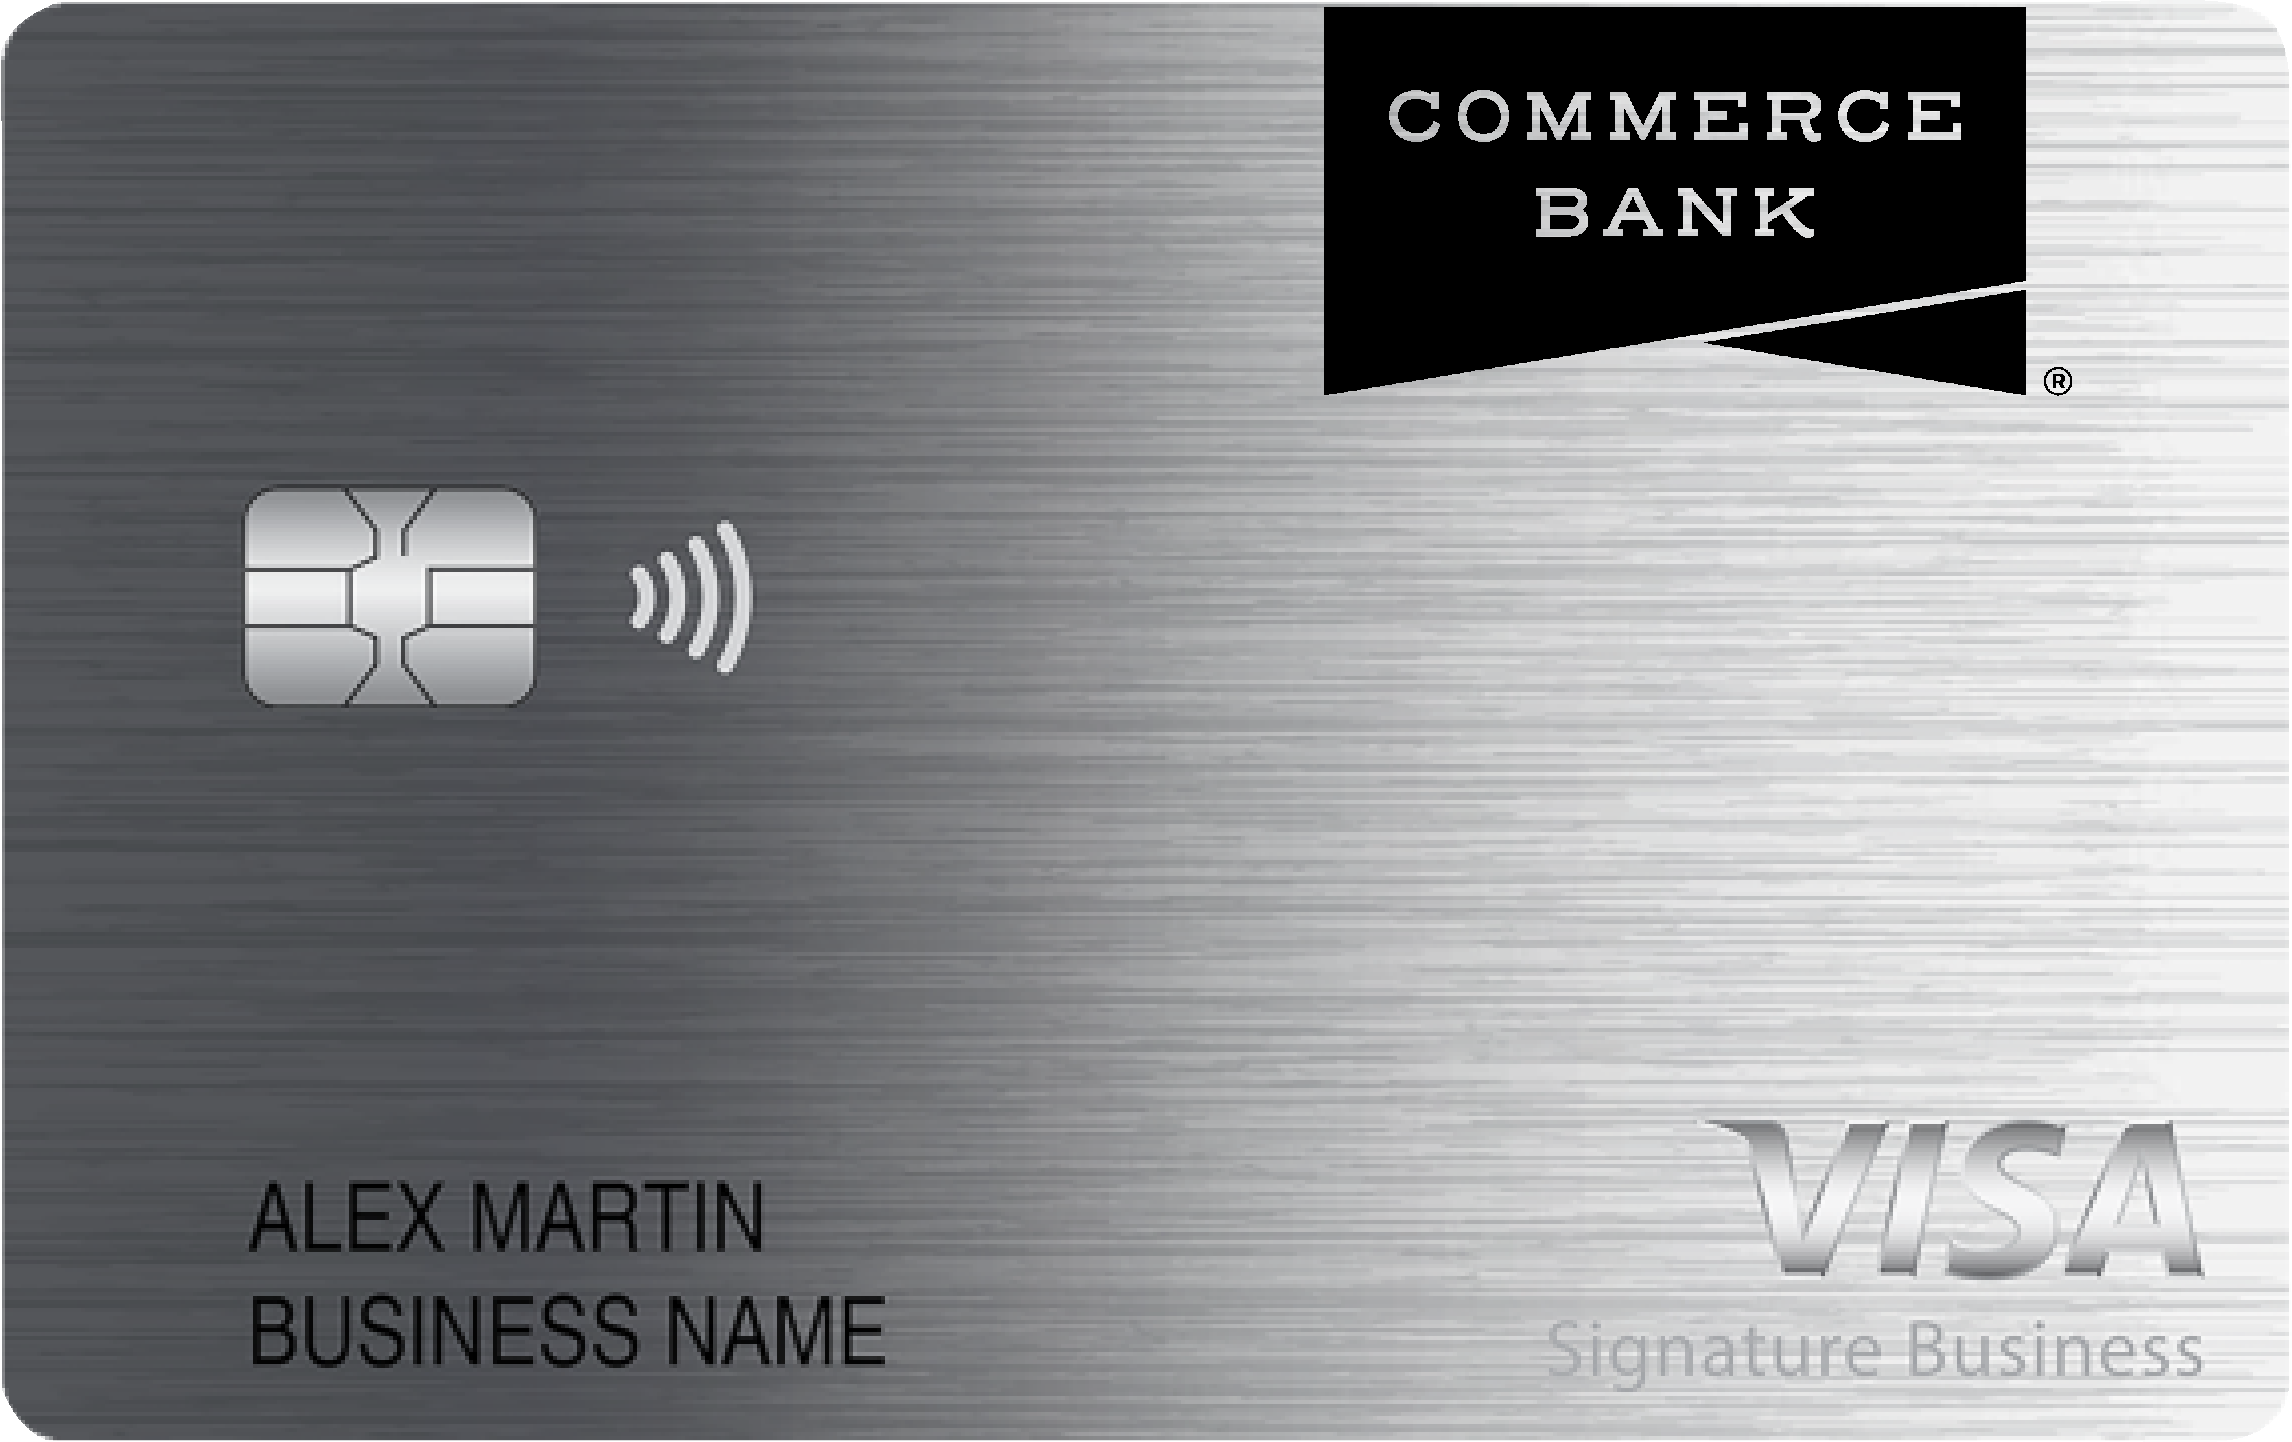 Commerce Bank Smart Business Rewards Card